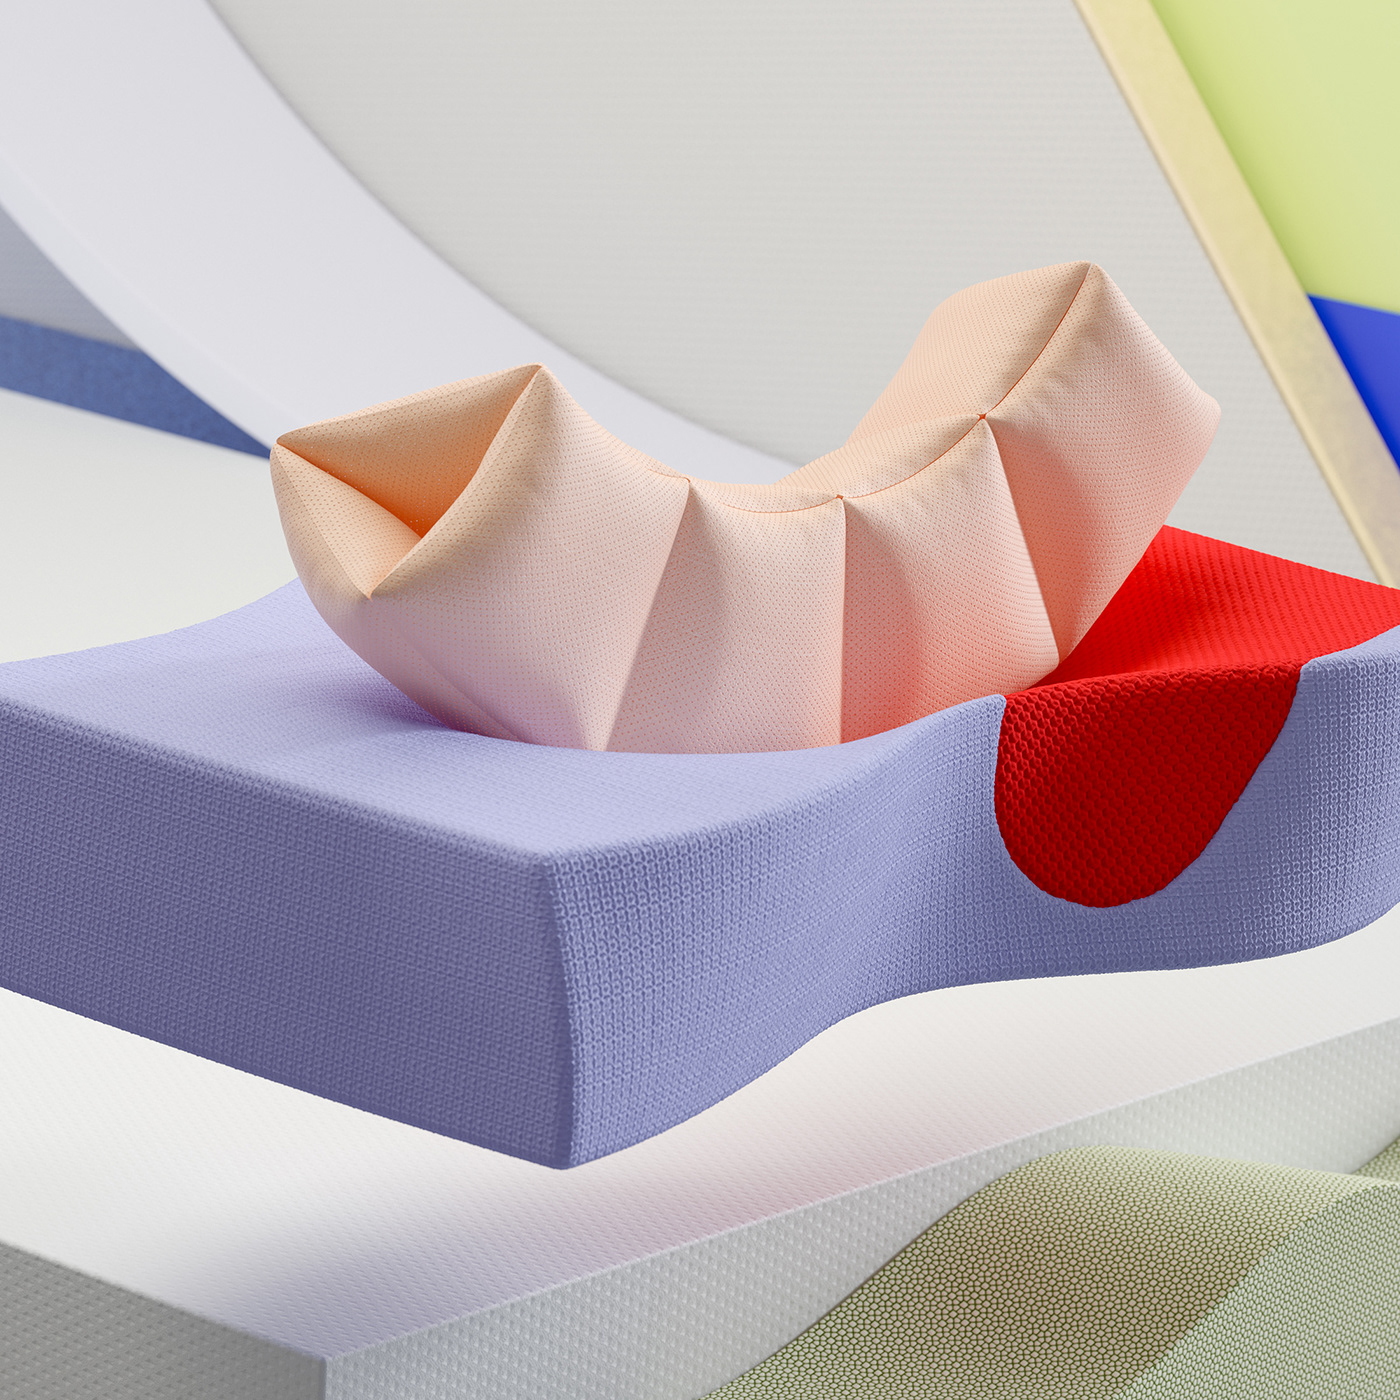 color MOTIONDESIG cinema 4d materials texture 3D Render scan laser stagedesign